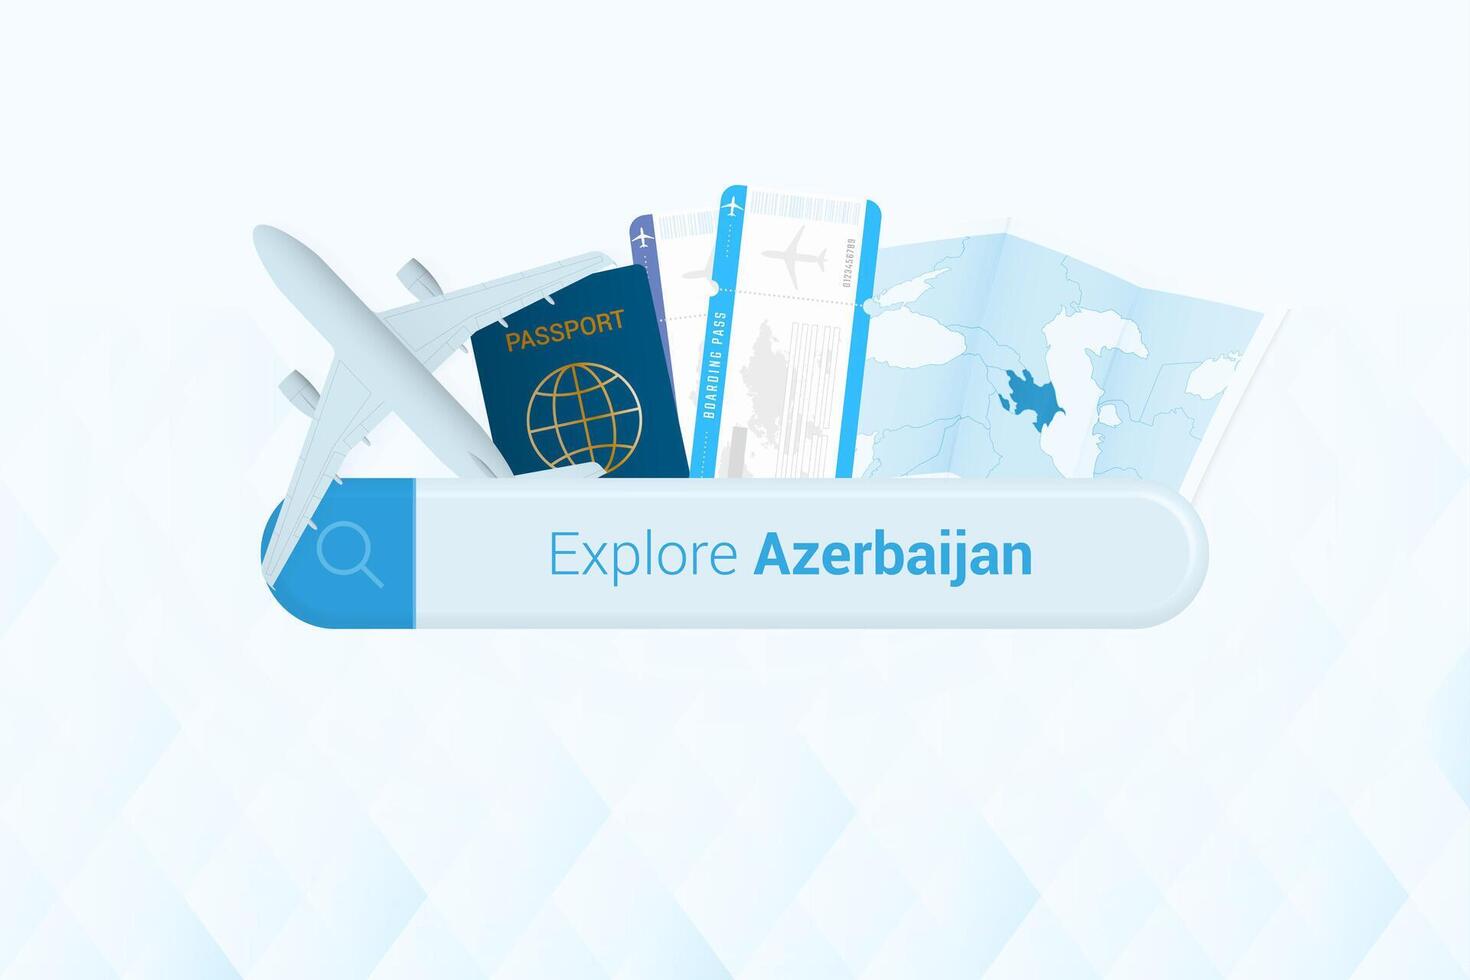 ricerca Biglietti per azerbaijan o viaggio destinazione nel azerbaigian. ricerca bar con aereo, passaporto, imbarco passaggio, Biglietti e carta geografica. vettore